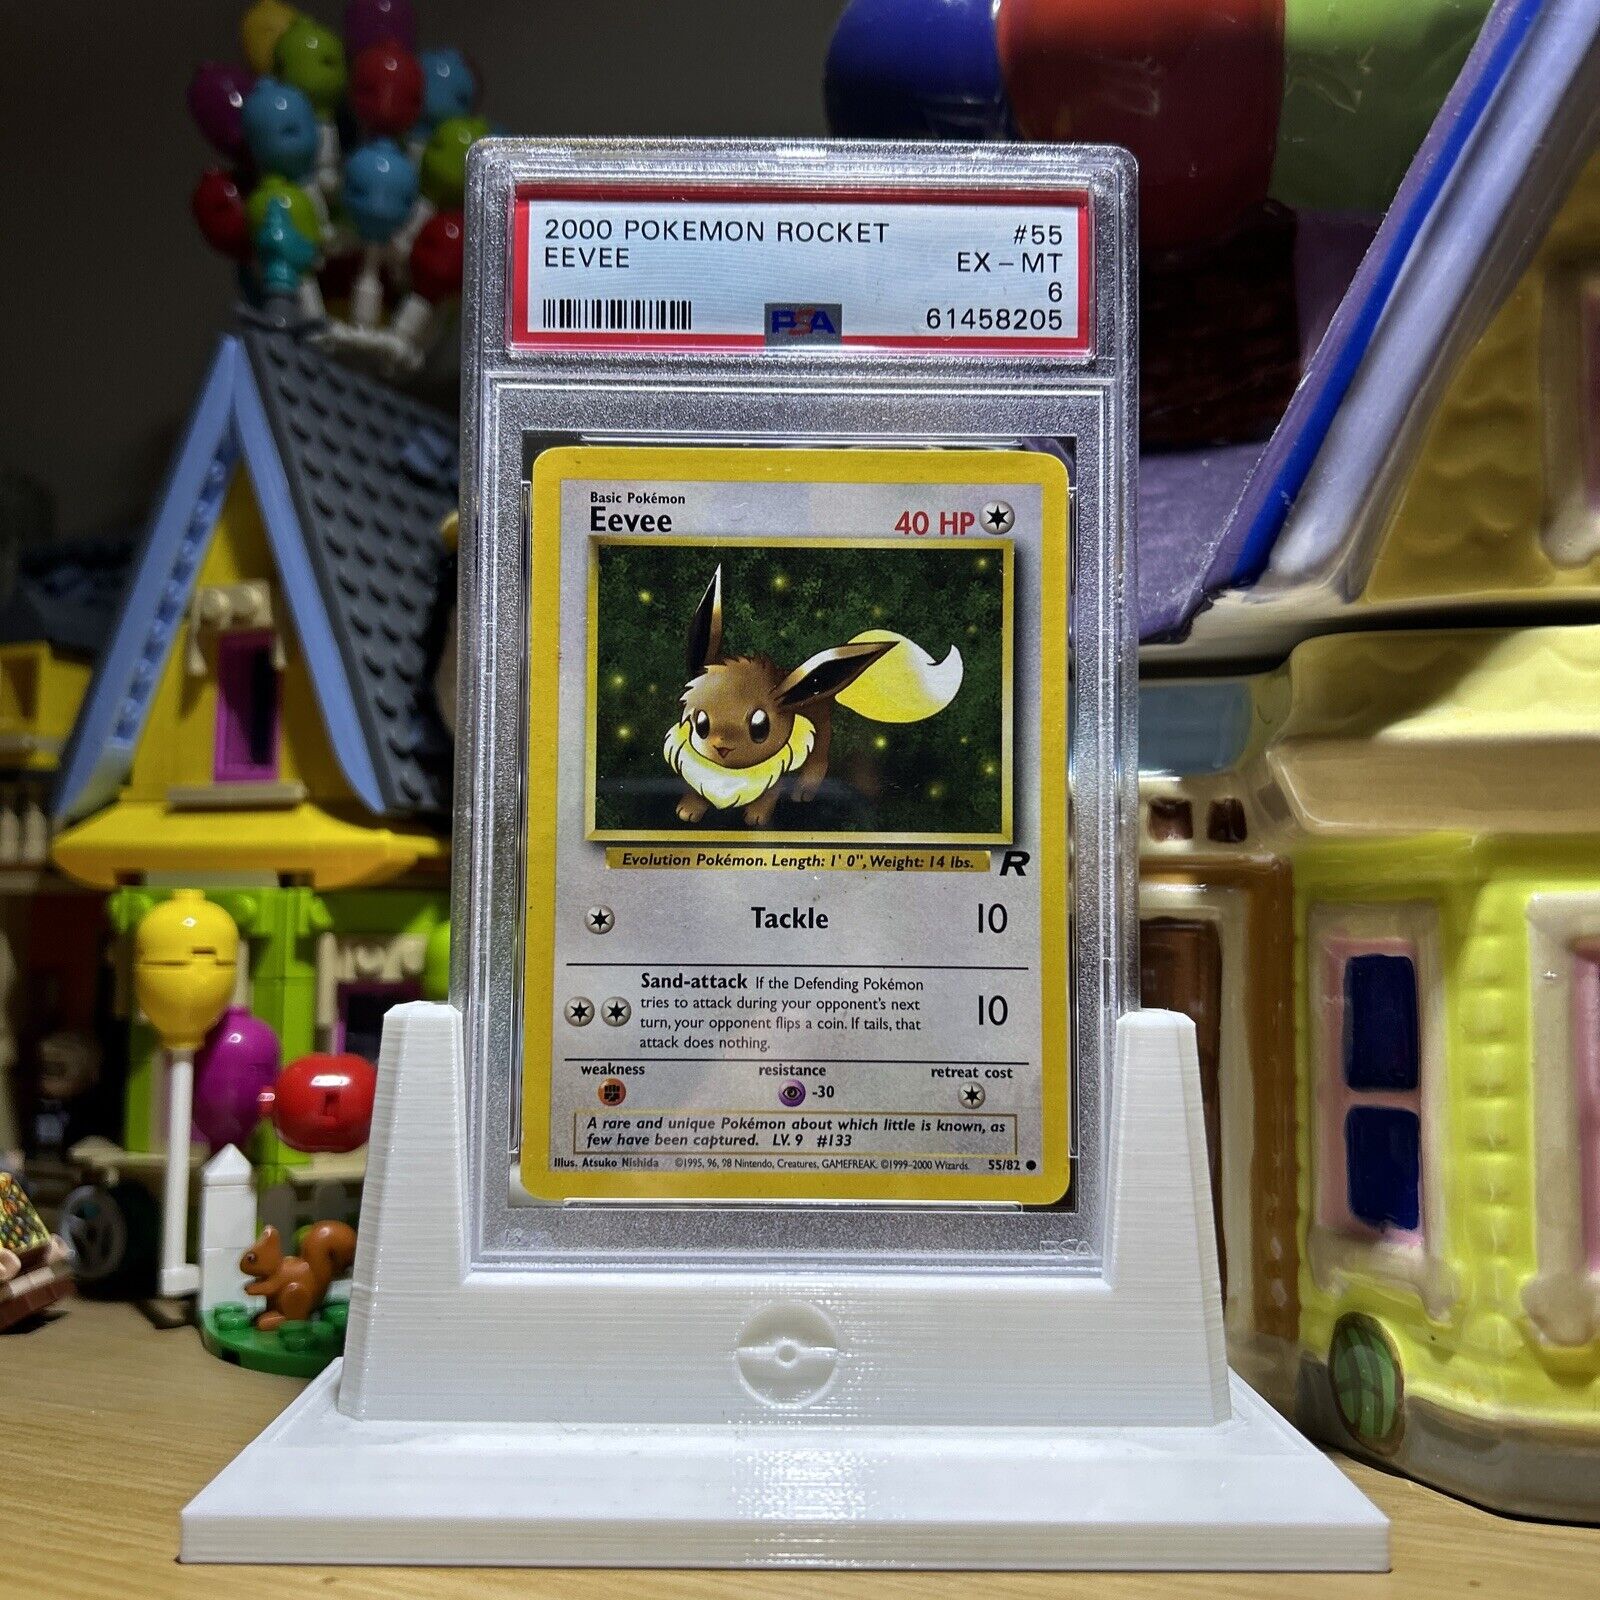 2000 Pokemon Team Rocket - #55 Eevee - PSA 6 Graded Trading Card